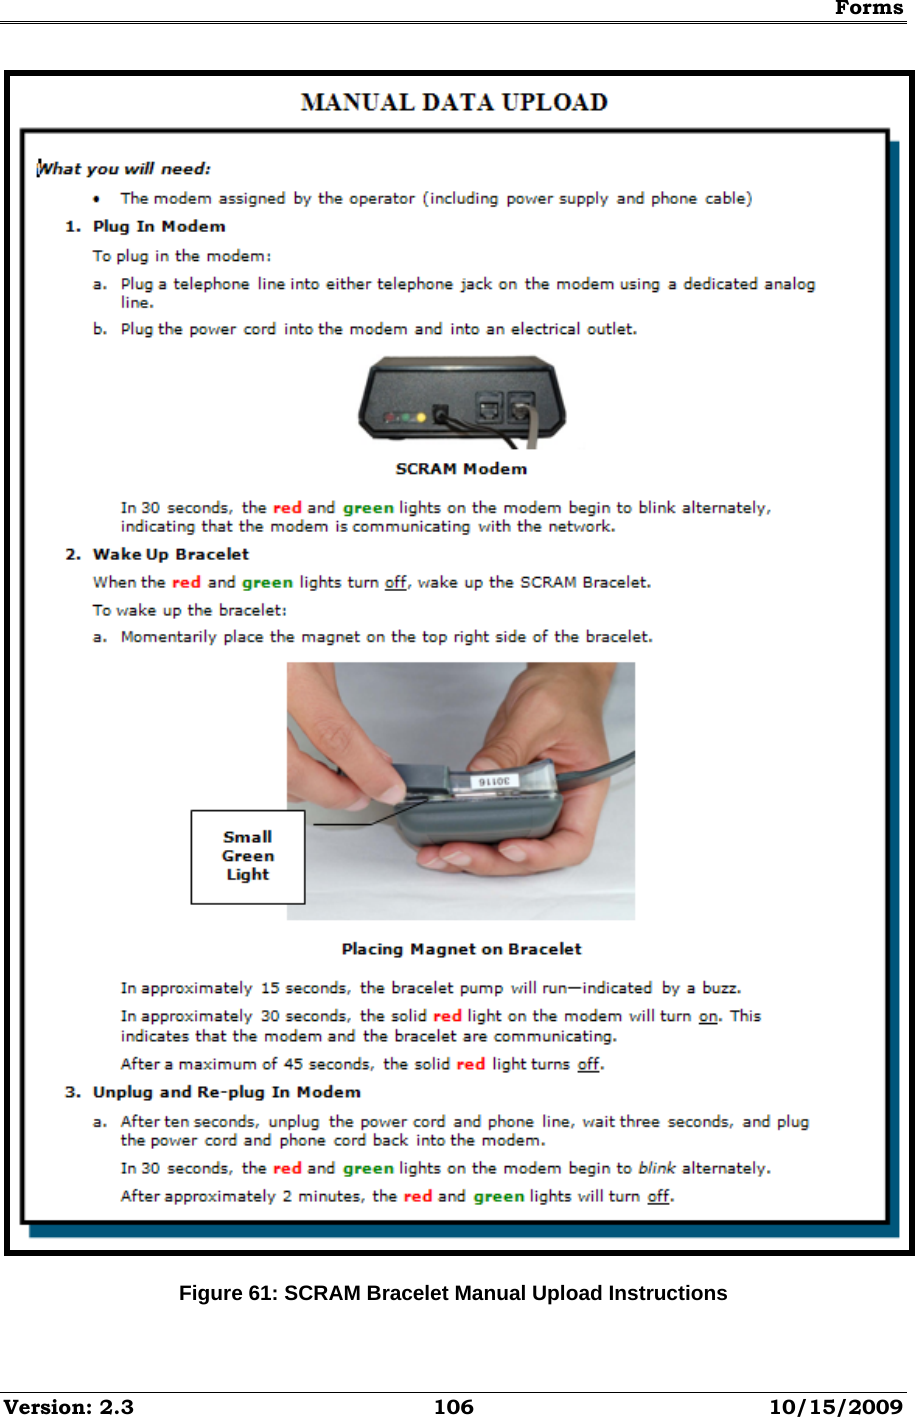 Forms Version: 2.3  106  10/15/2009  Figure 61: SCRAM Bracelet Manual Upload Instructions 